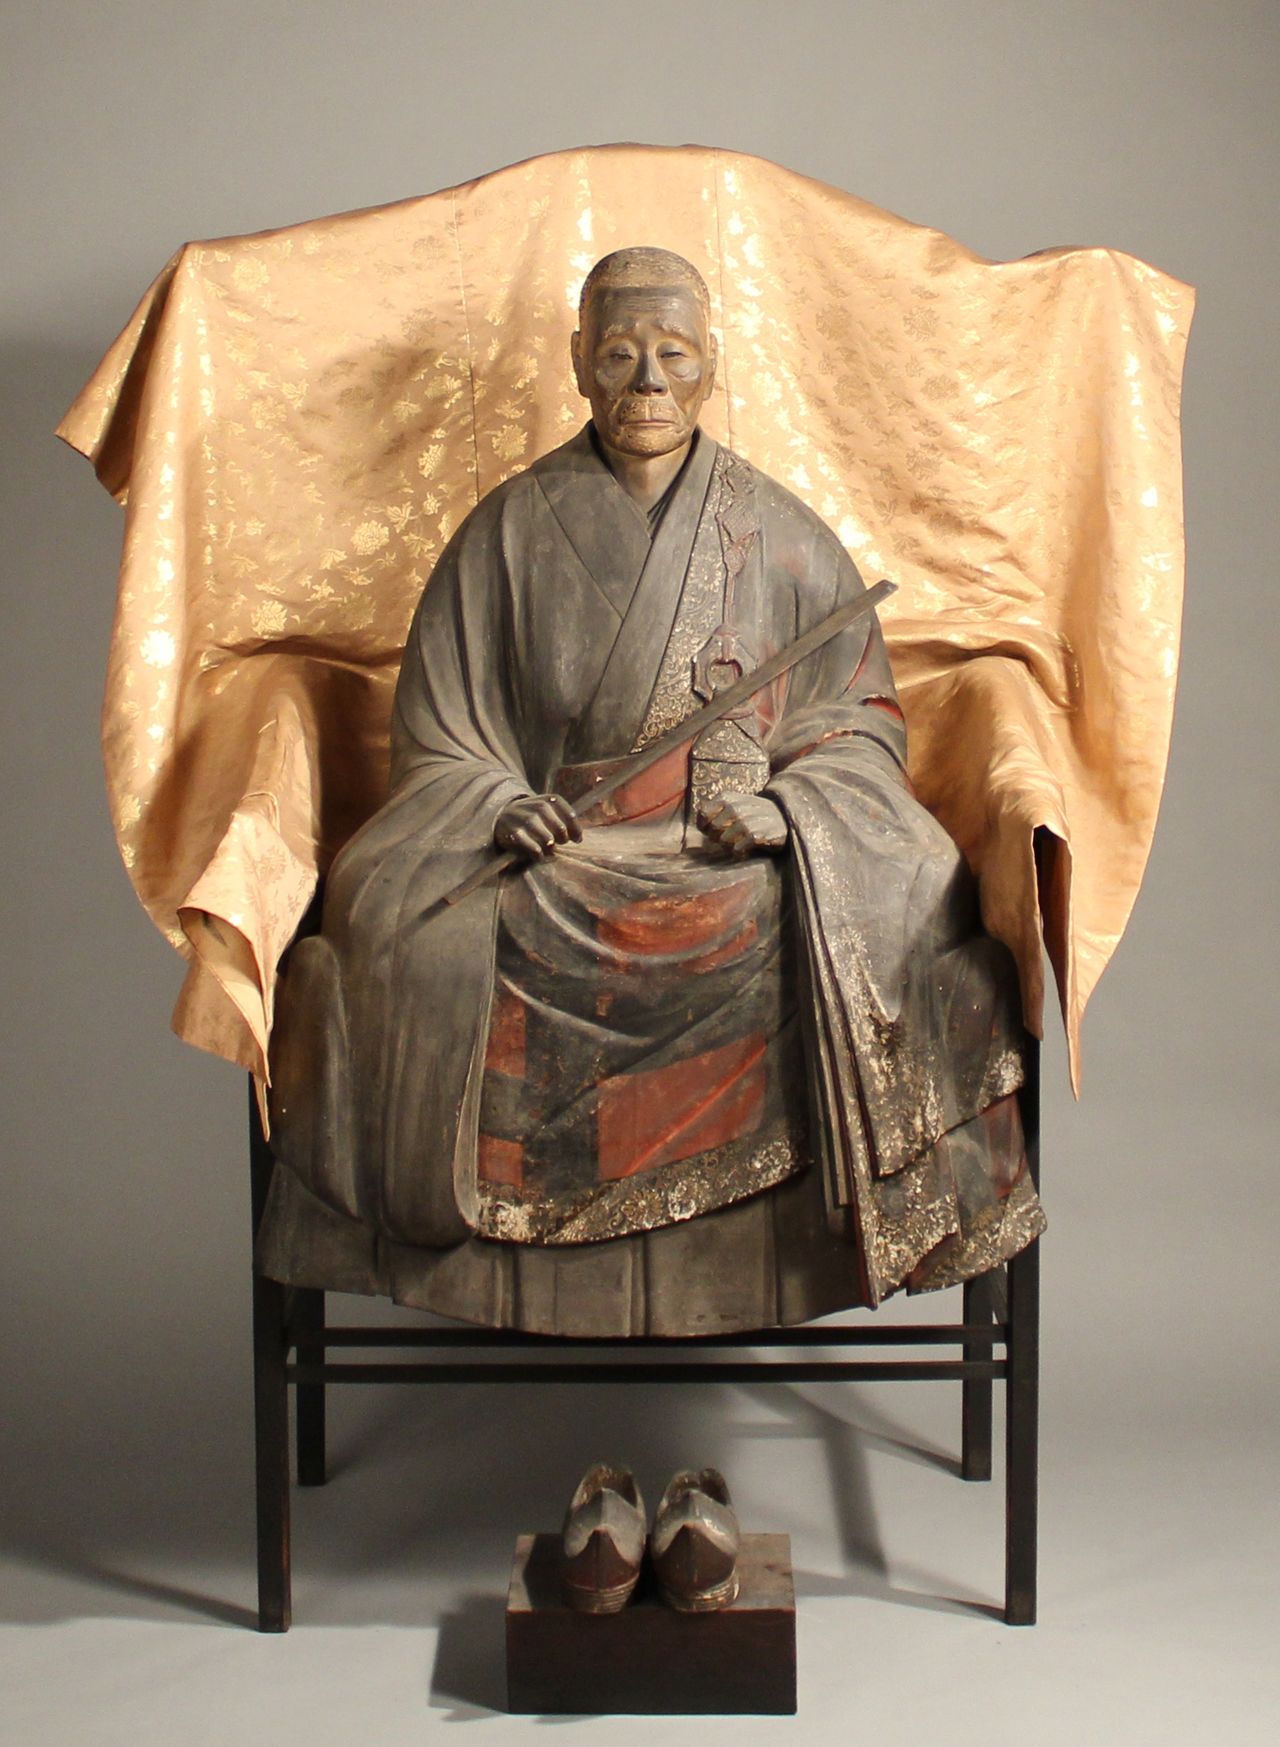   تمثال خشبي لإيكو (من ممتلكات معبد شووأون)